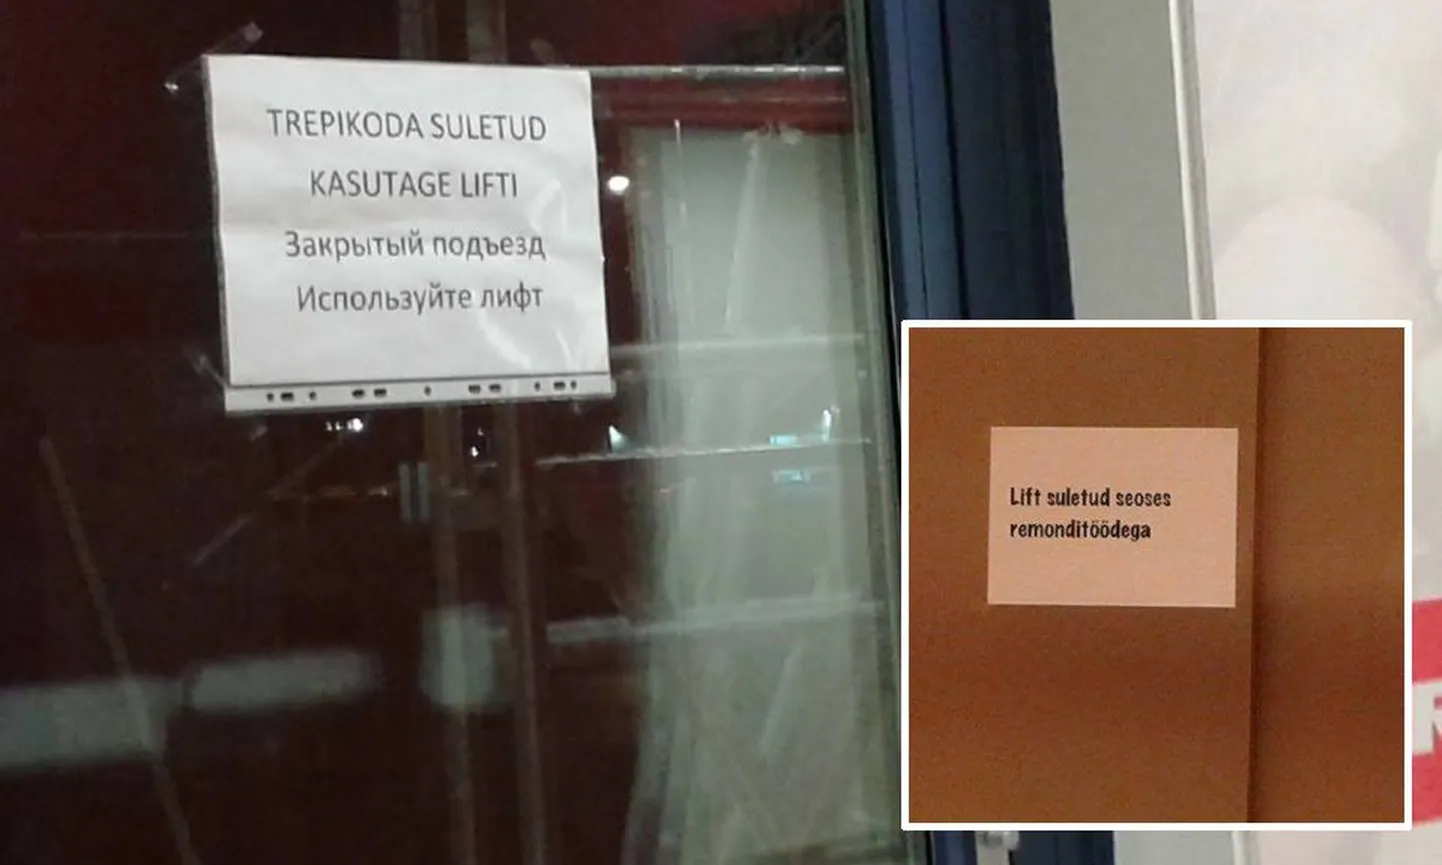 Надпись на правом снимке: лифт закрыт в связи с ремонтом.